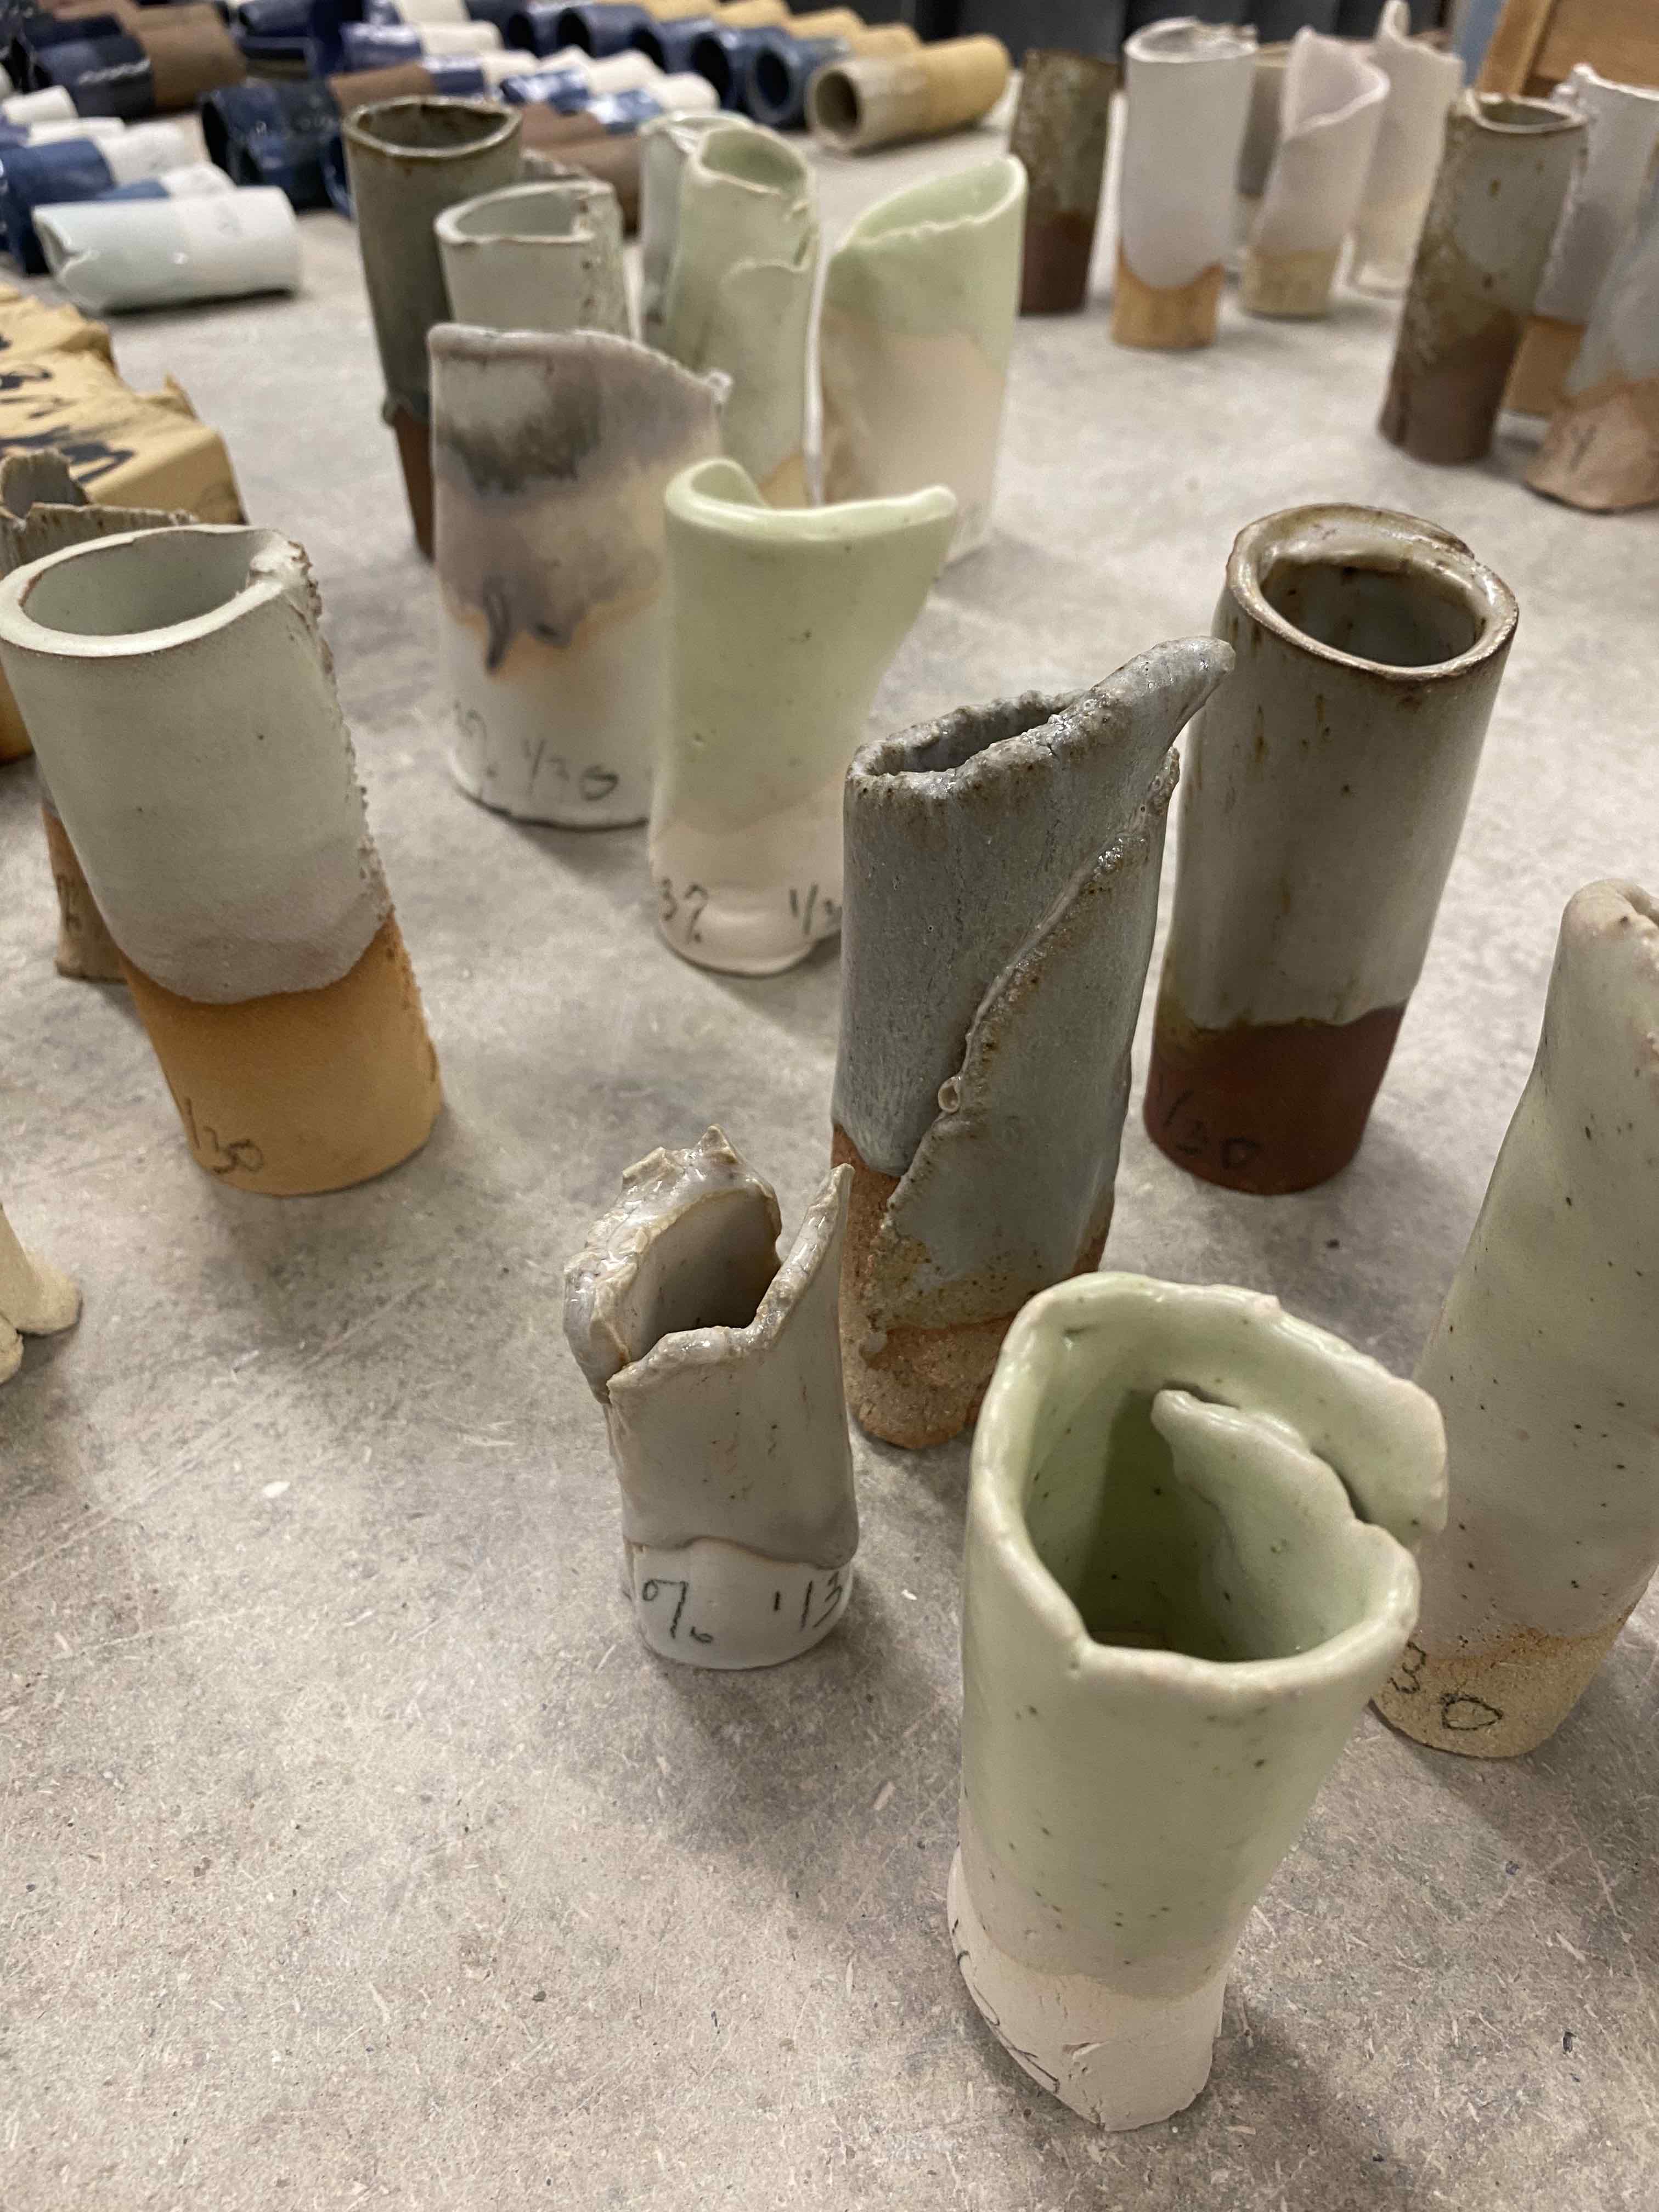 This image various ceramics pieces.